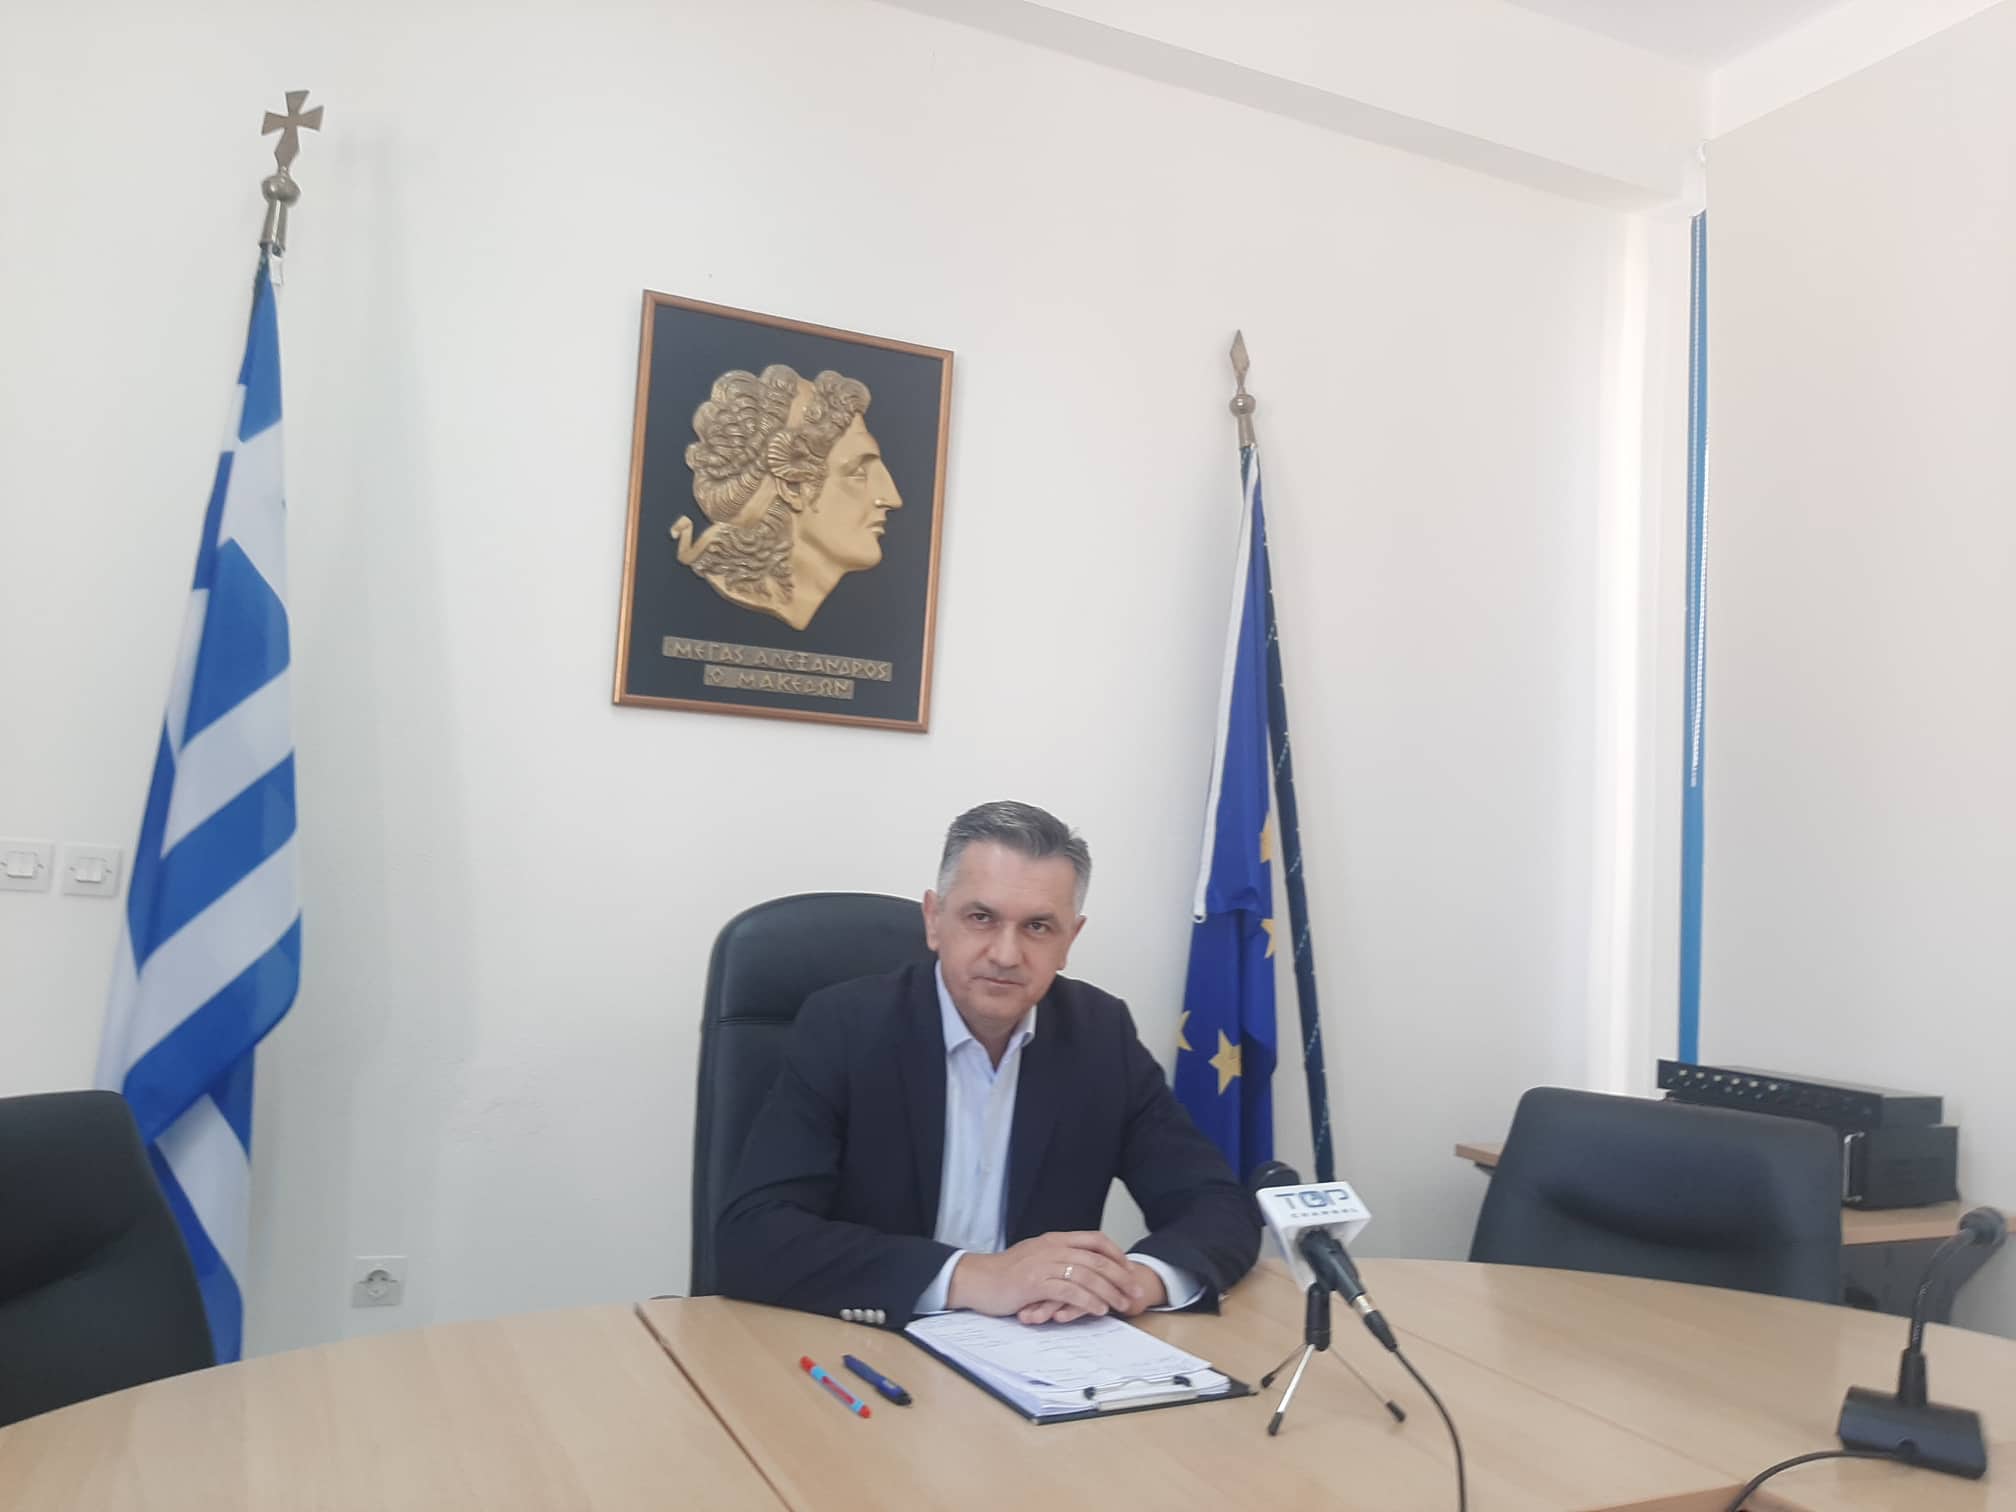 Γ. Κασαπίδης: Σχέδιο τουριστικής προβολής, ίδρυση Ζώνης καινοτομίας και επενδυτικά σχέδια στα άμεσα σχέδια